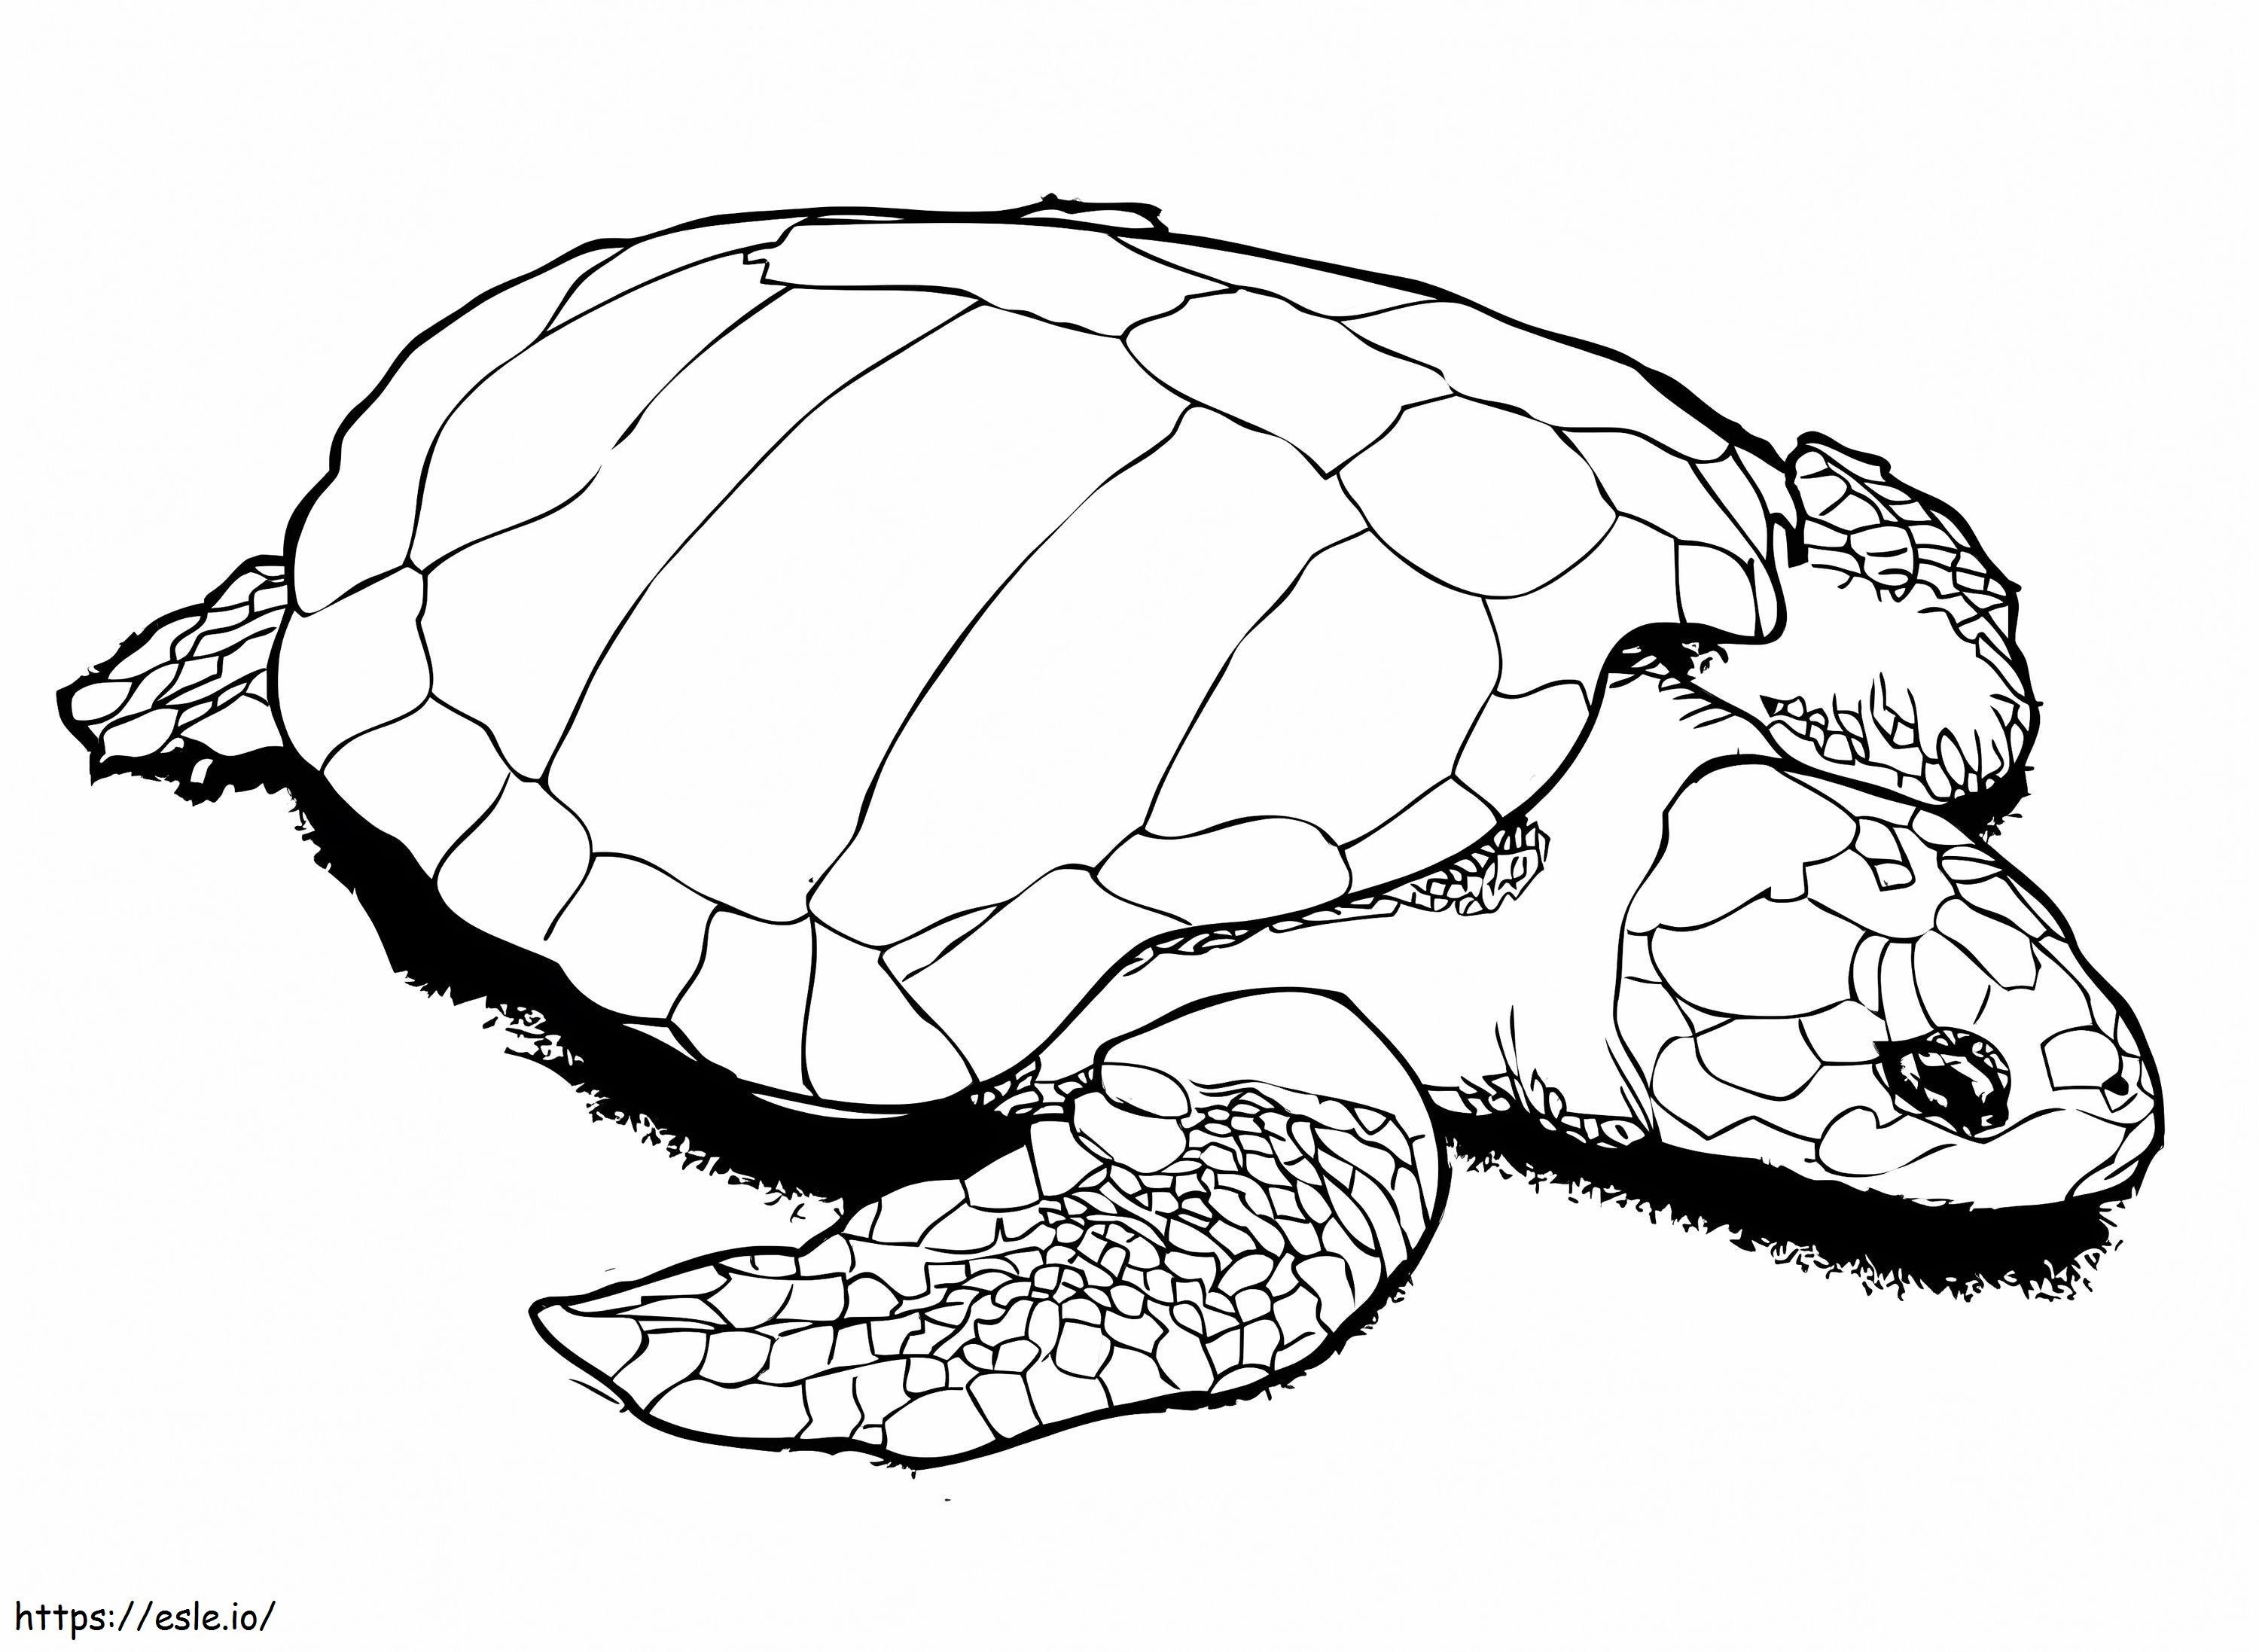 Einfache Schildkröte ausmalbilder